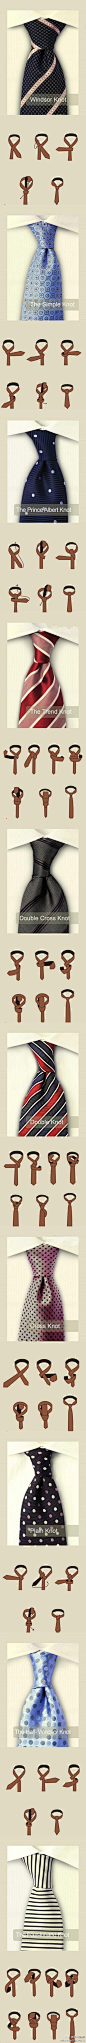 Different ways to tie ties. | Men's Fashion